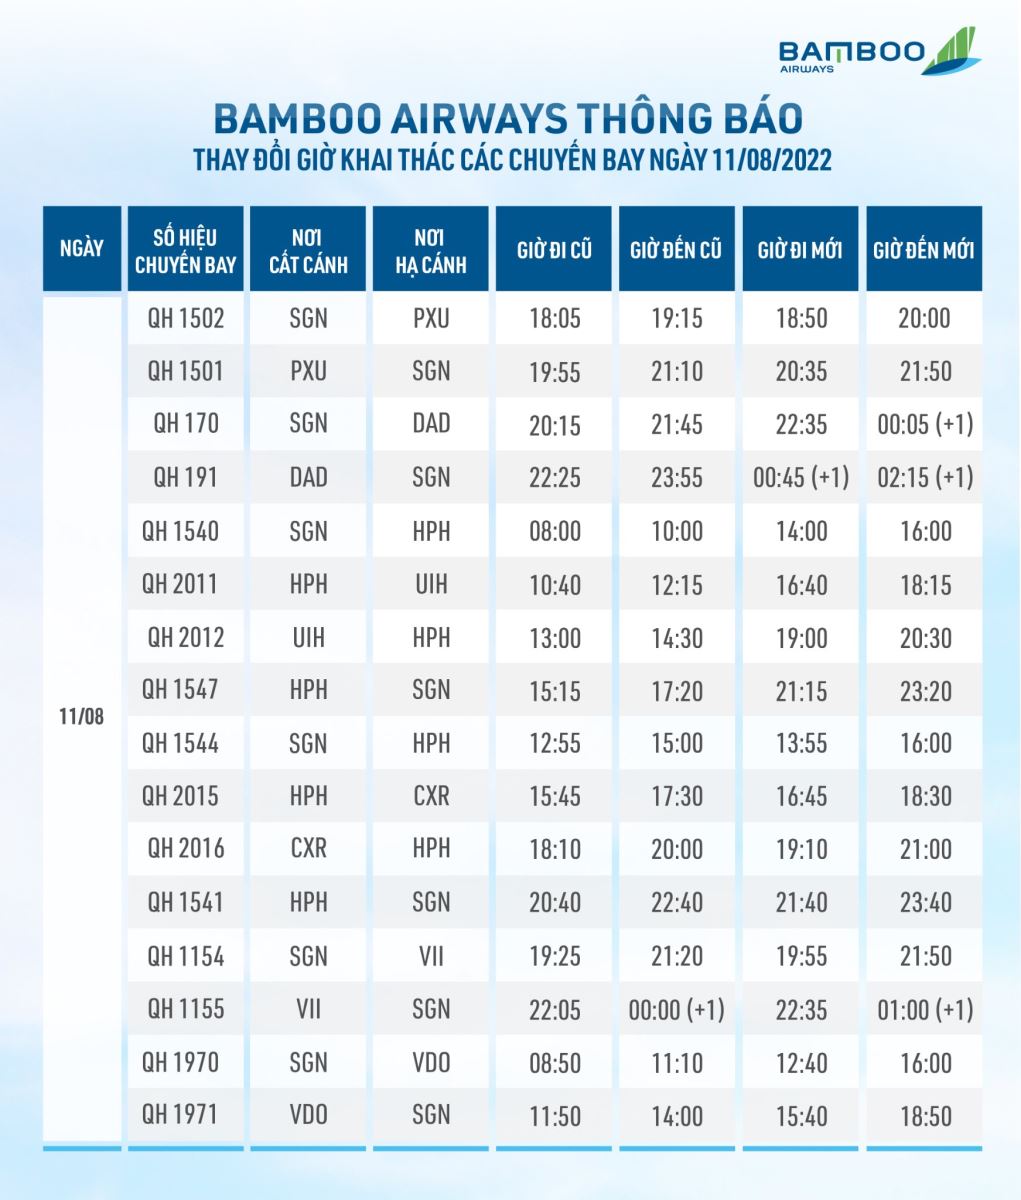 Các chuyến bay Bamboo bị ảnh hưởng do bão Mulan